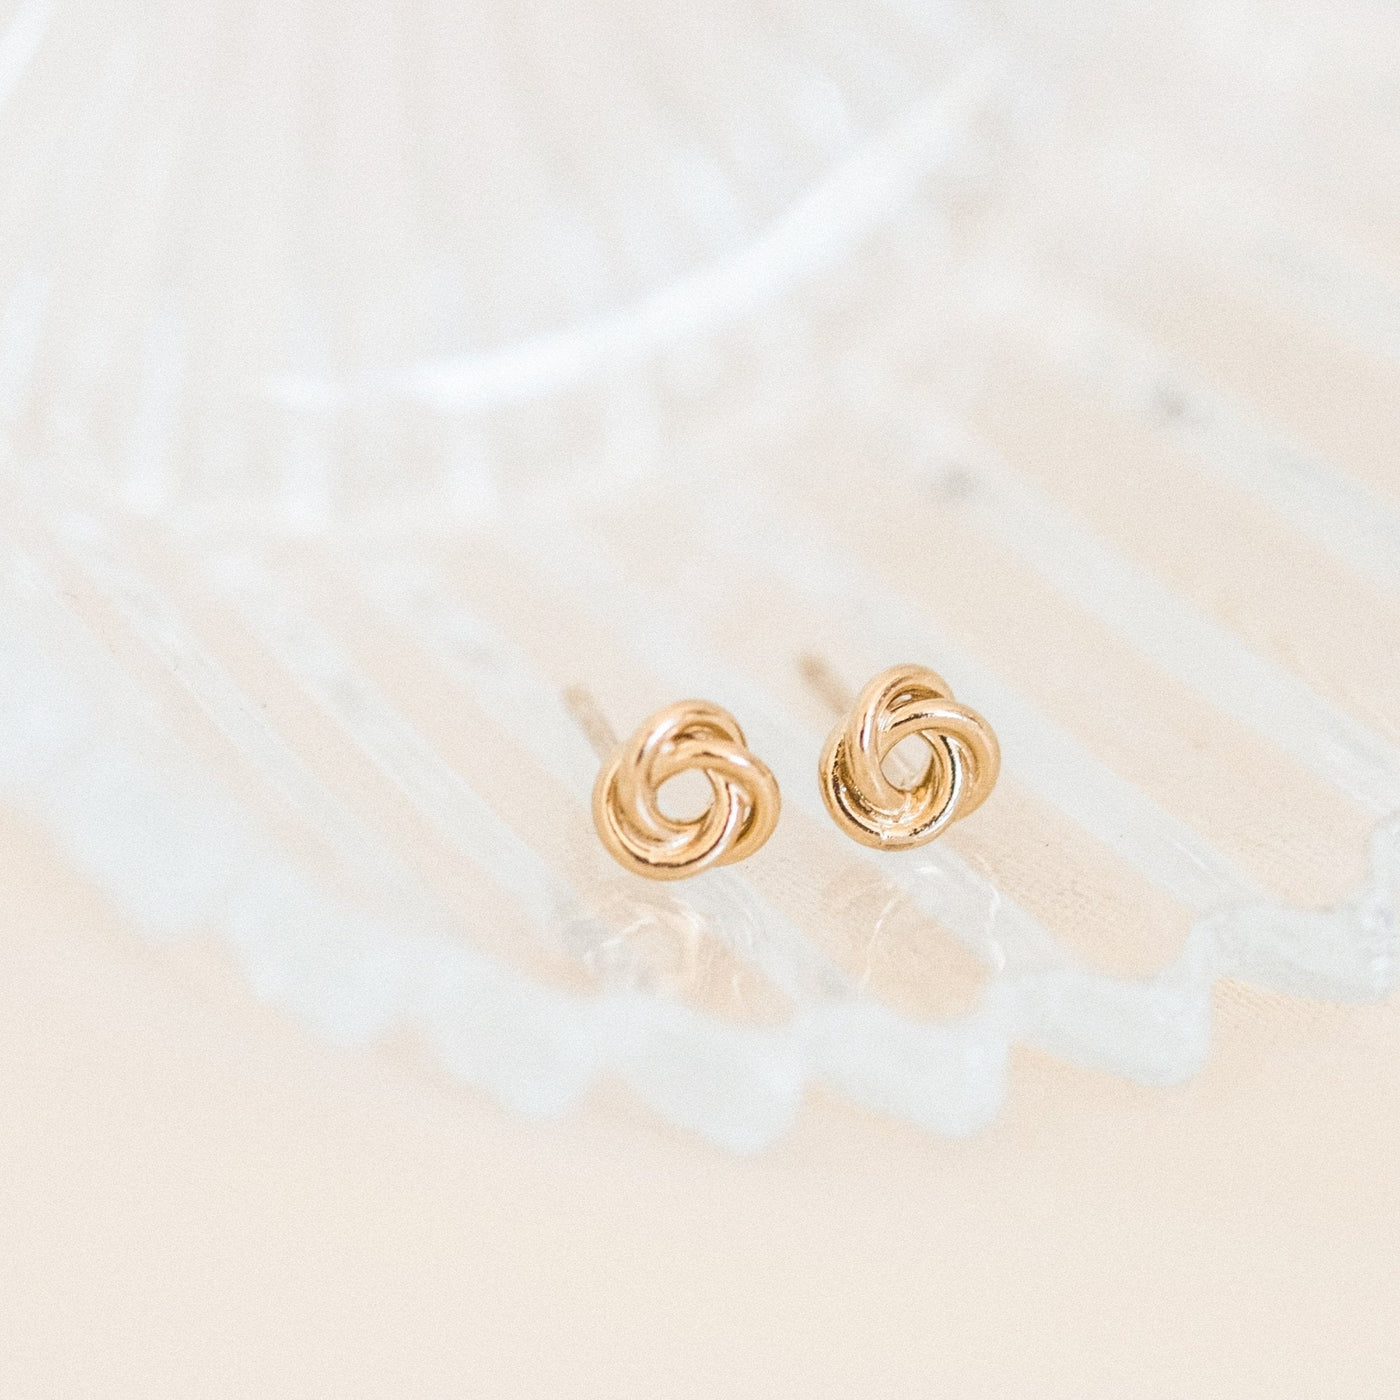 Love Knot Stud Earrings by Simple & Dainty Jewelry